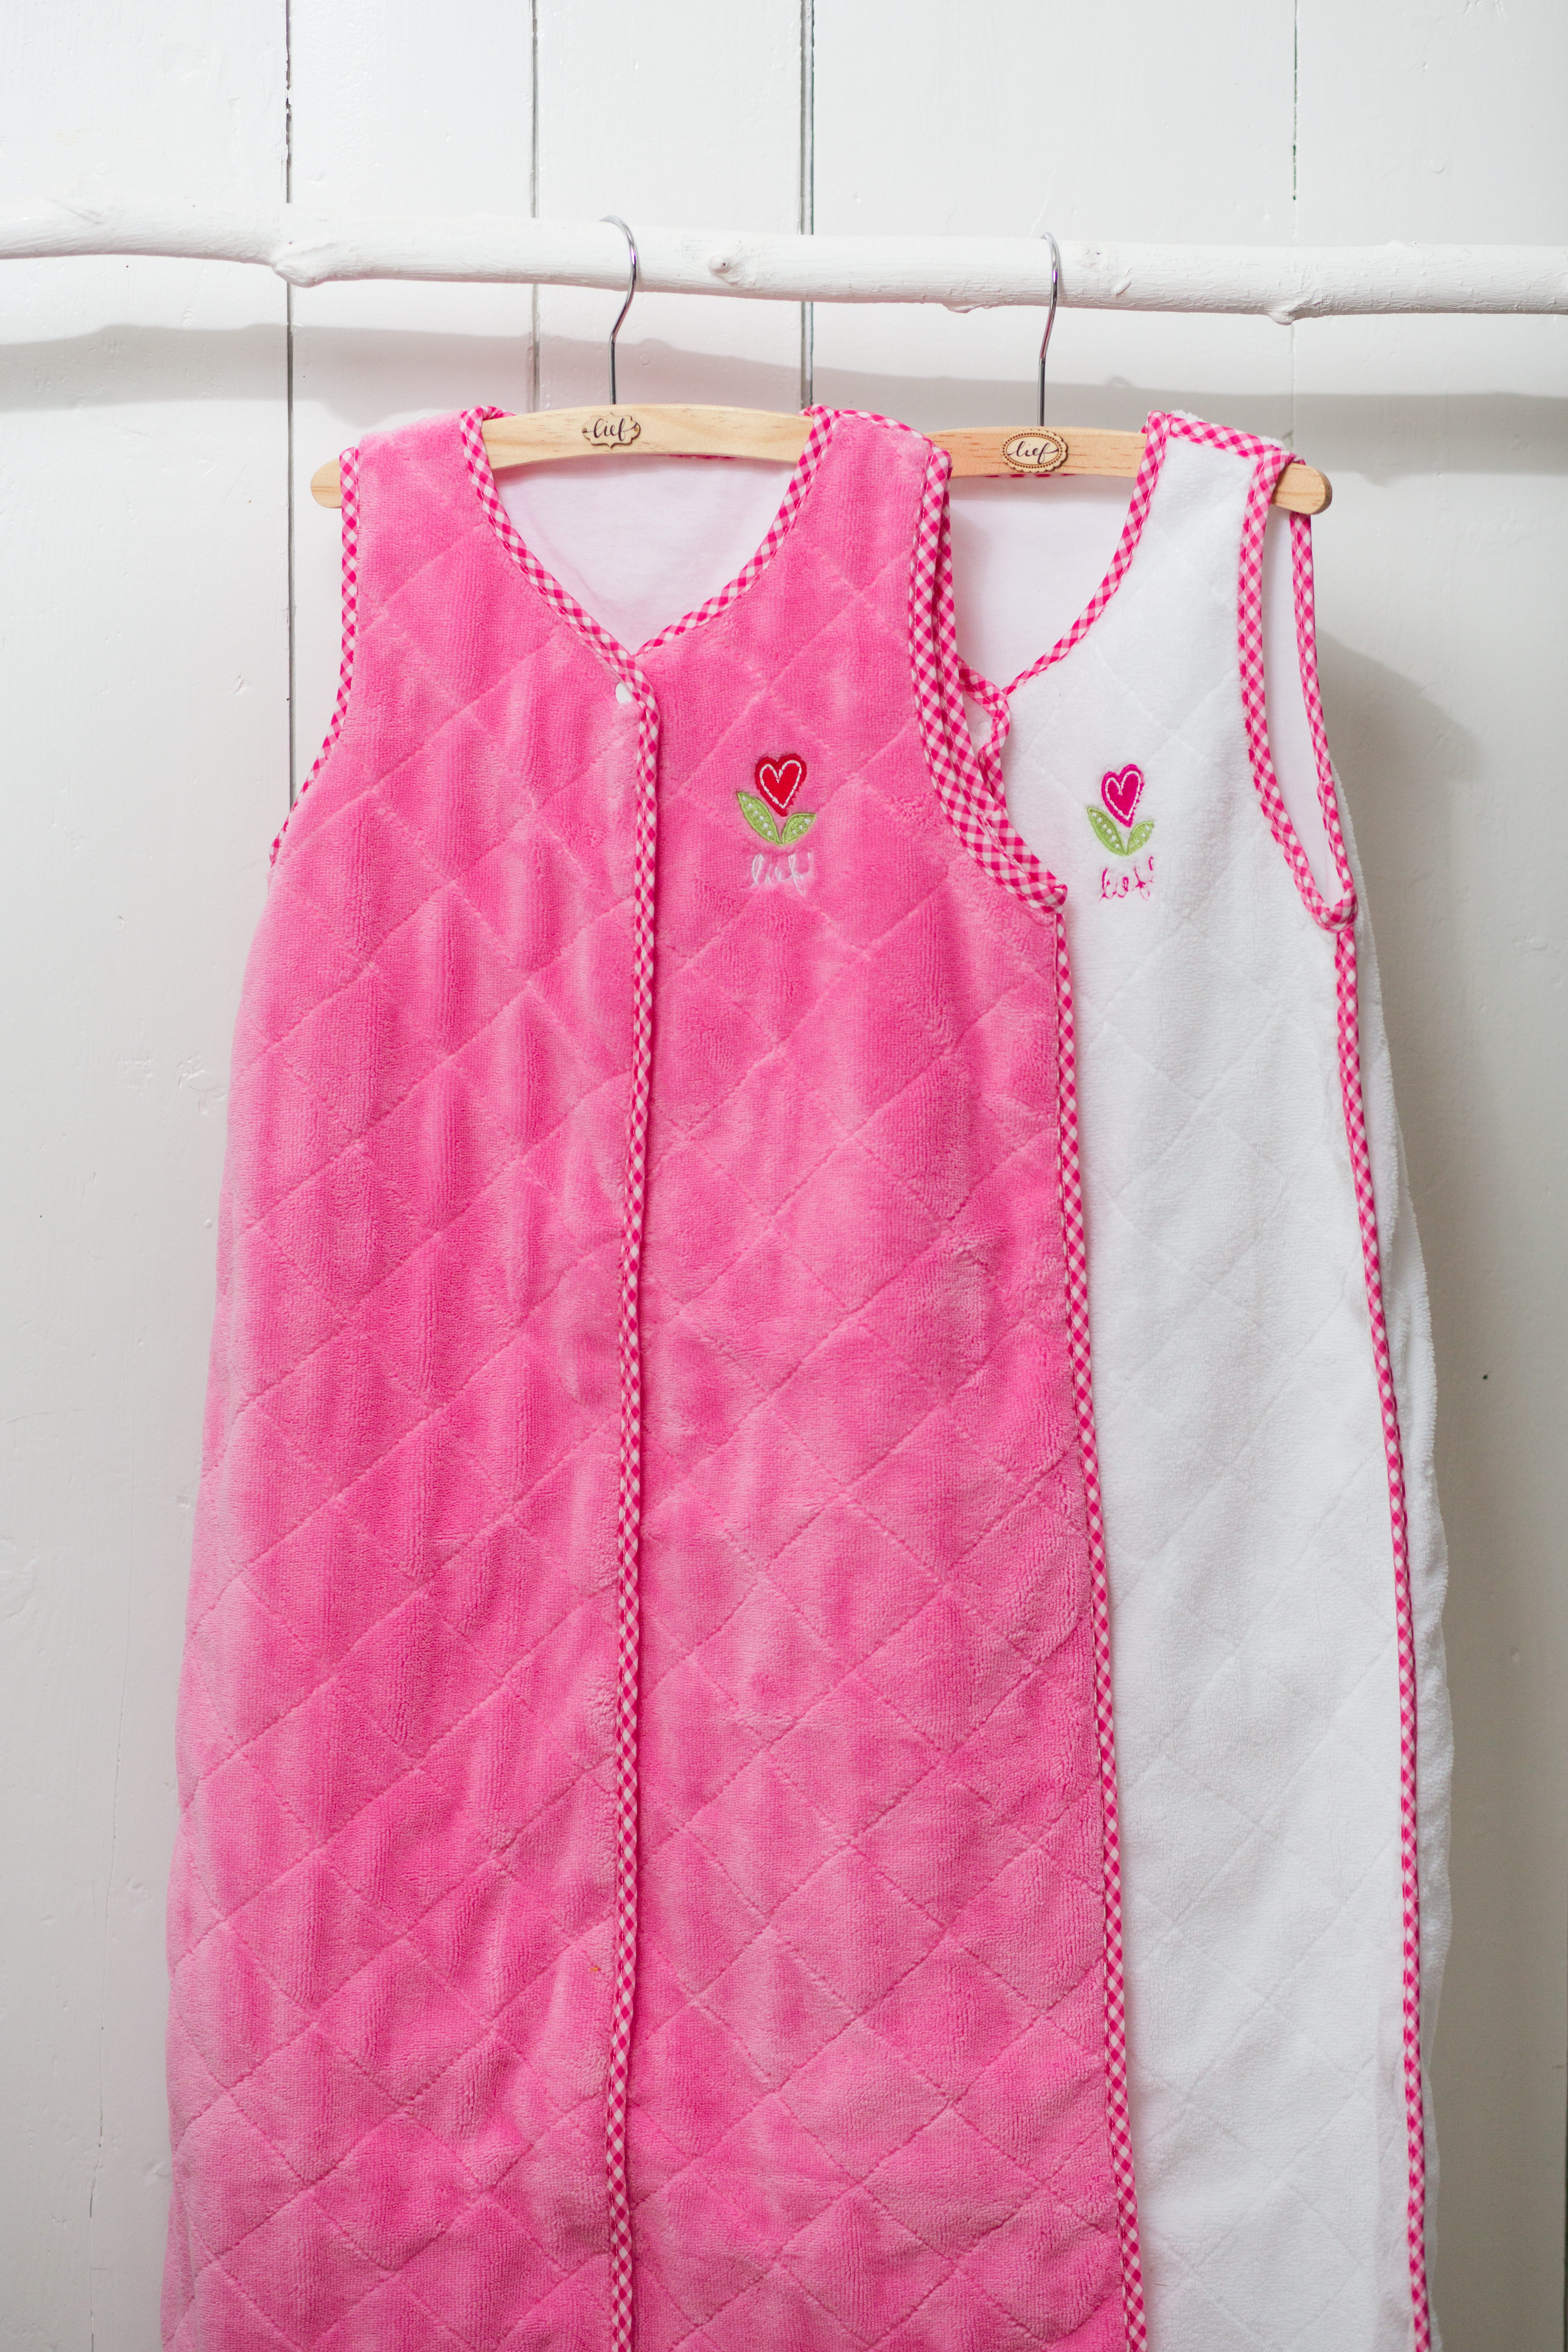 Slaapzakj Girl uni  roze, 50x70-90-110 cm